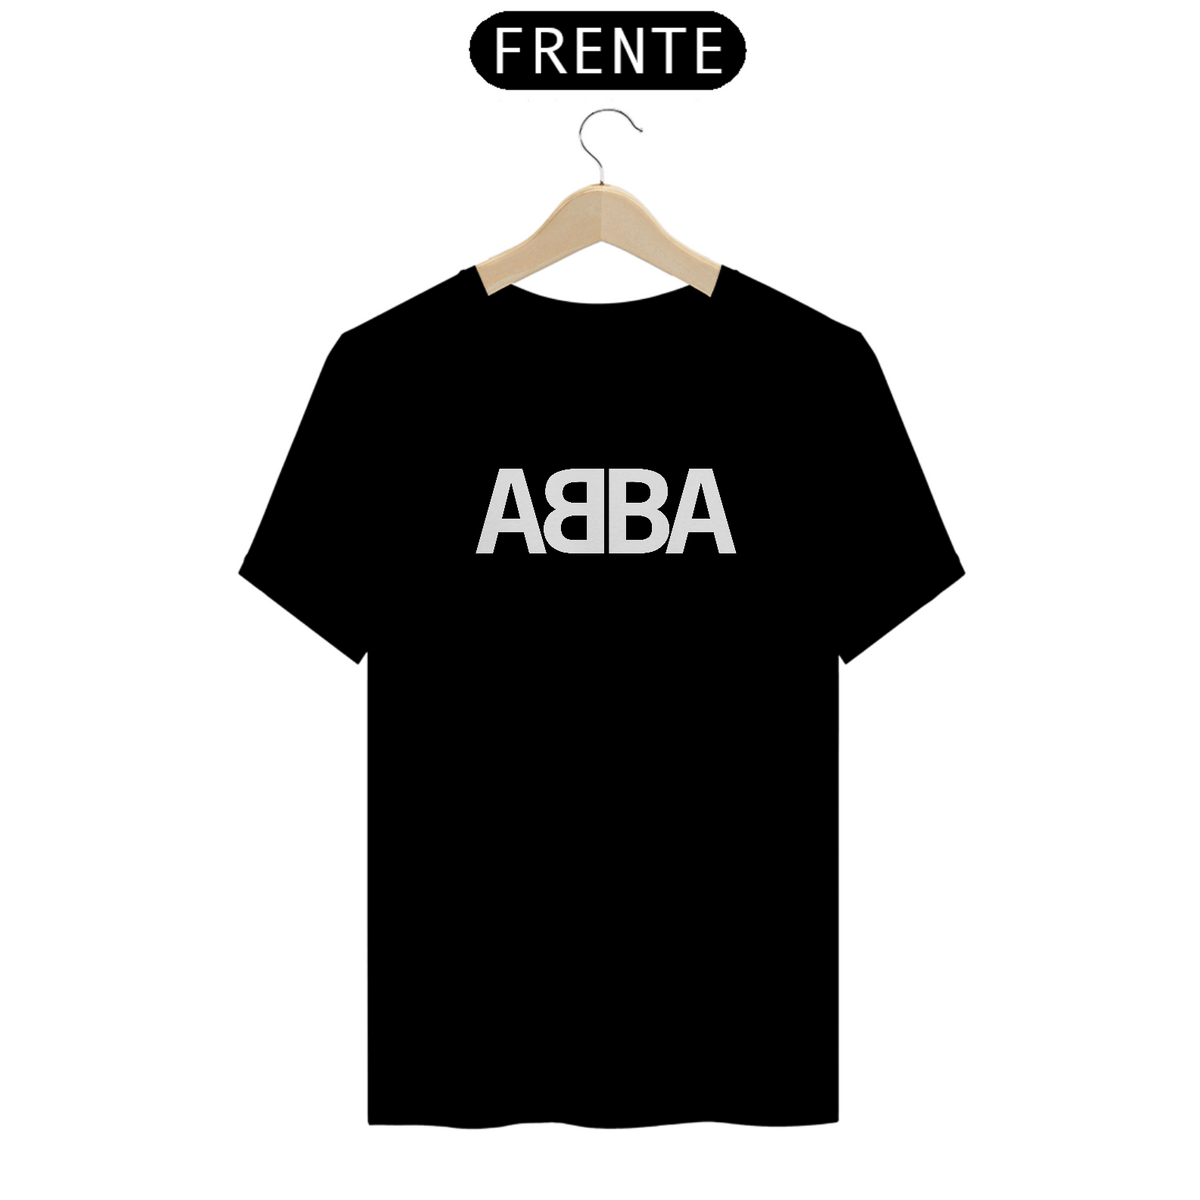 Nome do produto: Camiseta ABBA música classica